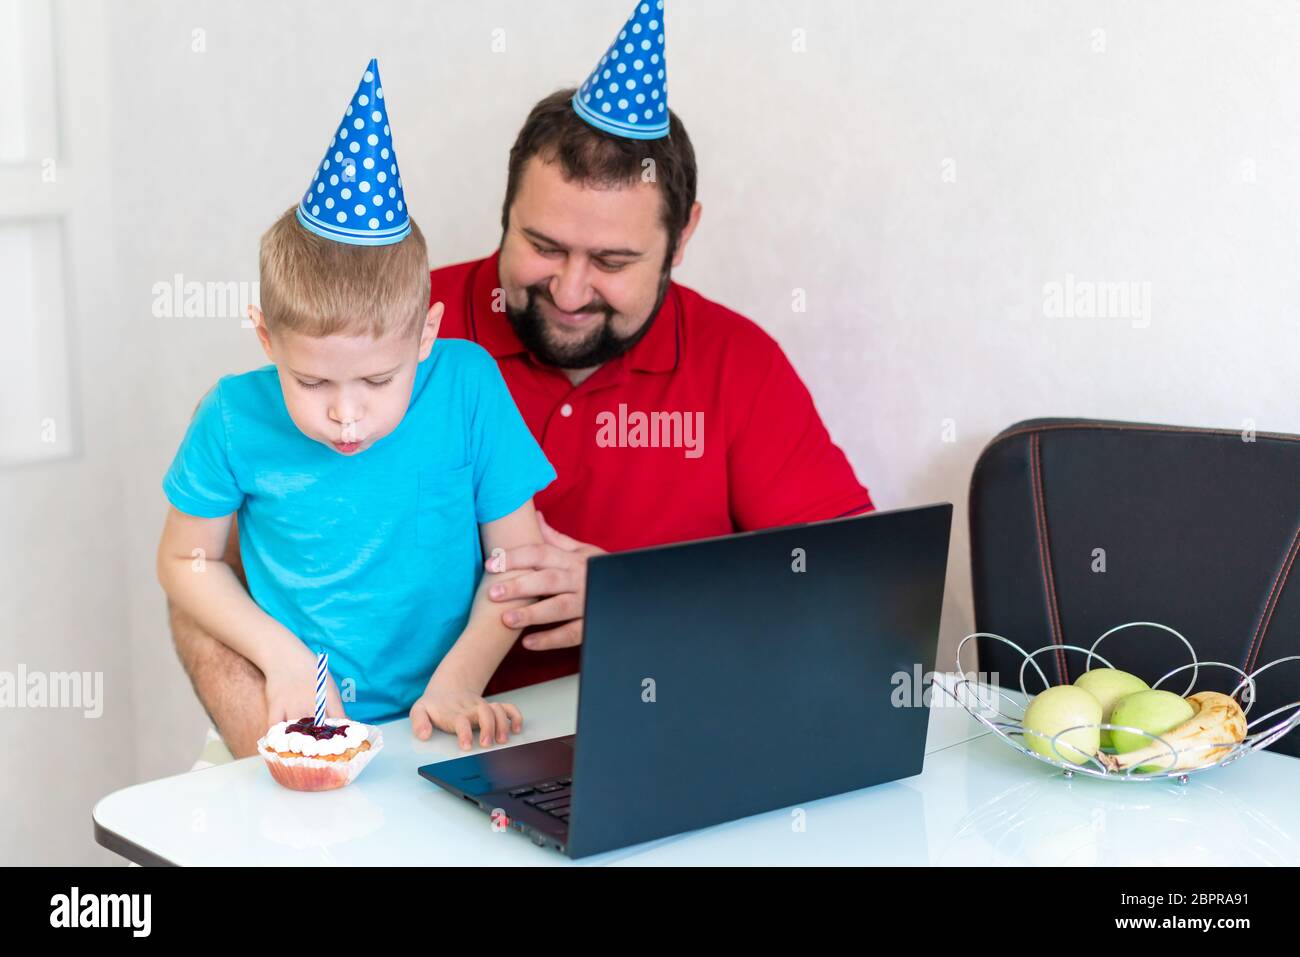 Il ragazzino con il padre festeggia il compleanno online, parlando con i parenti e gli amici. Soffia fuori la candela sulla torta Foto Stock